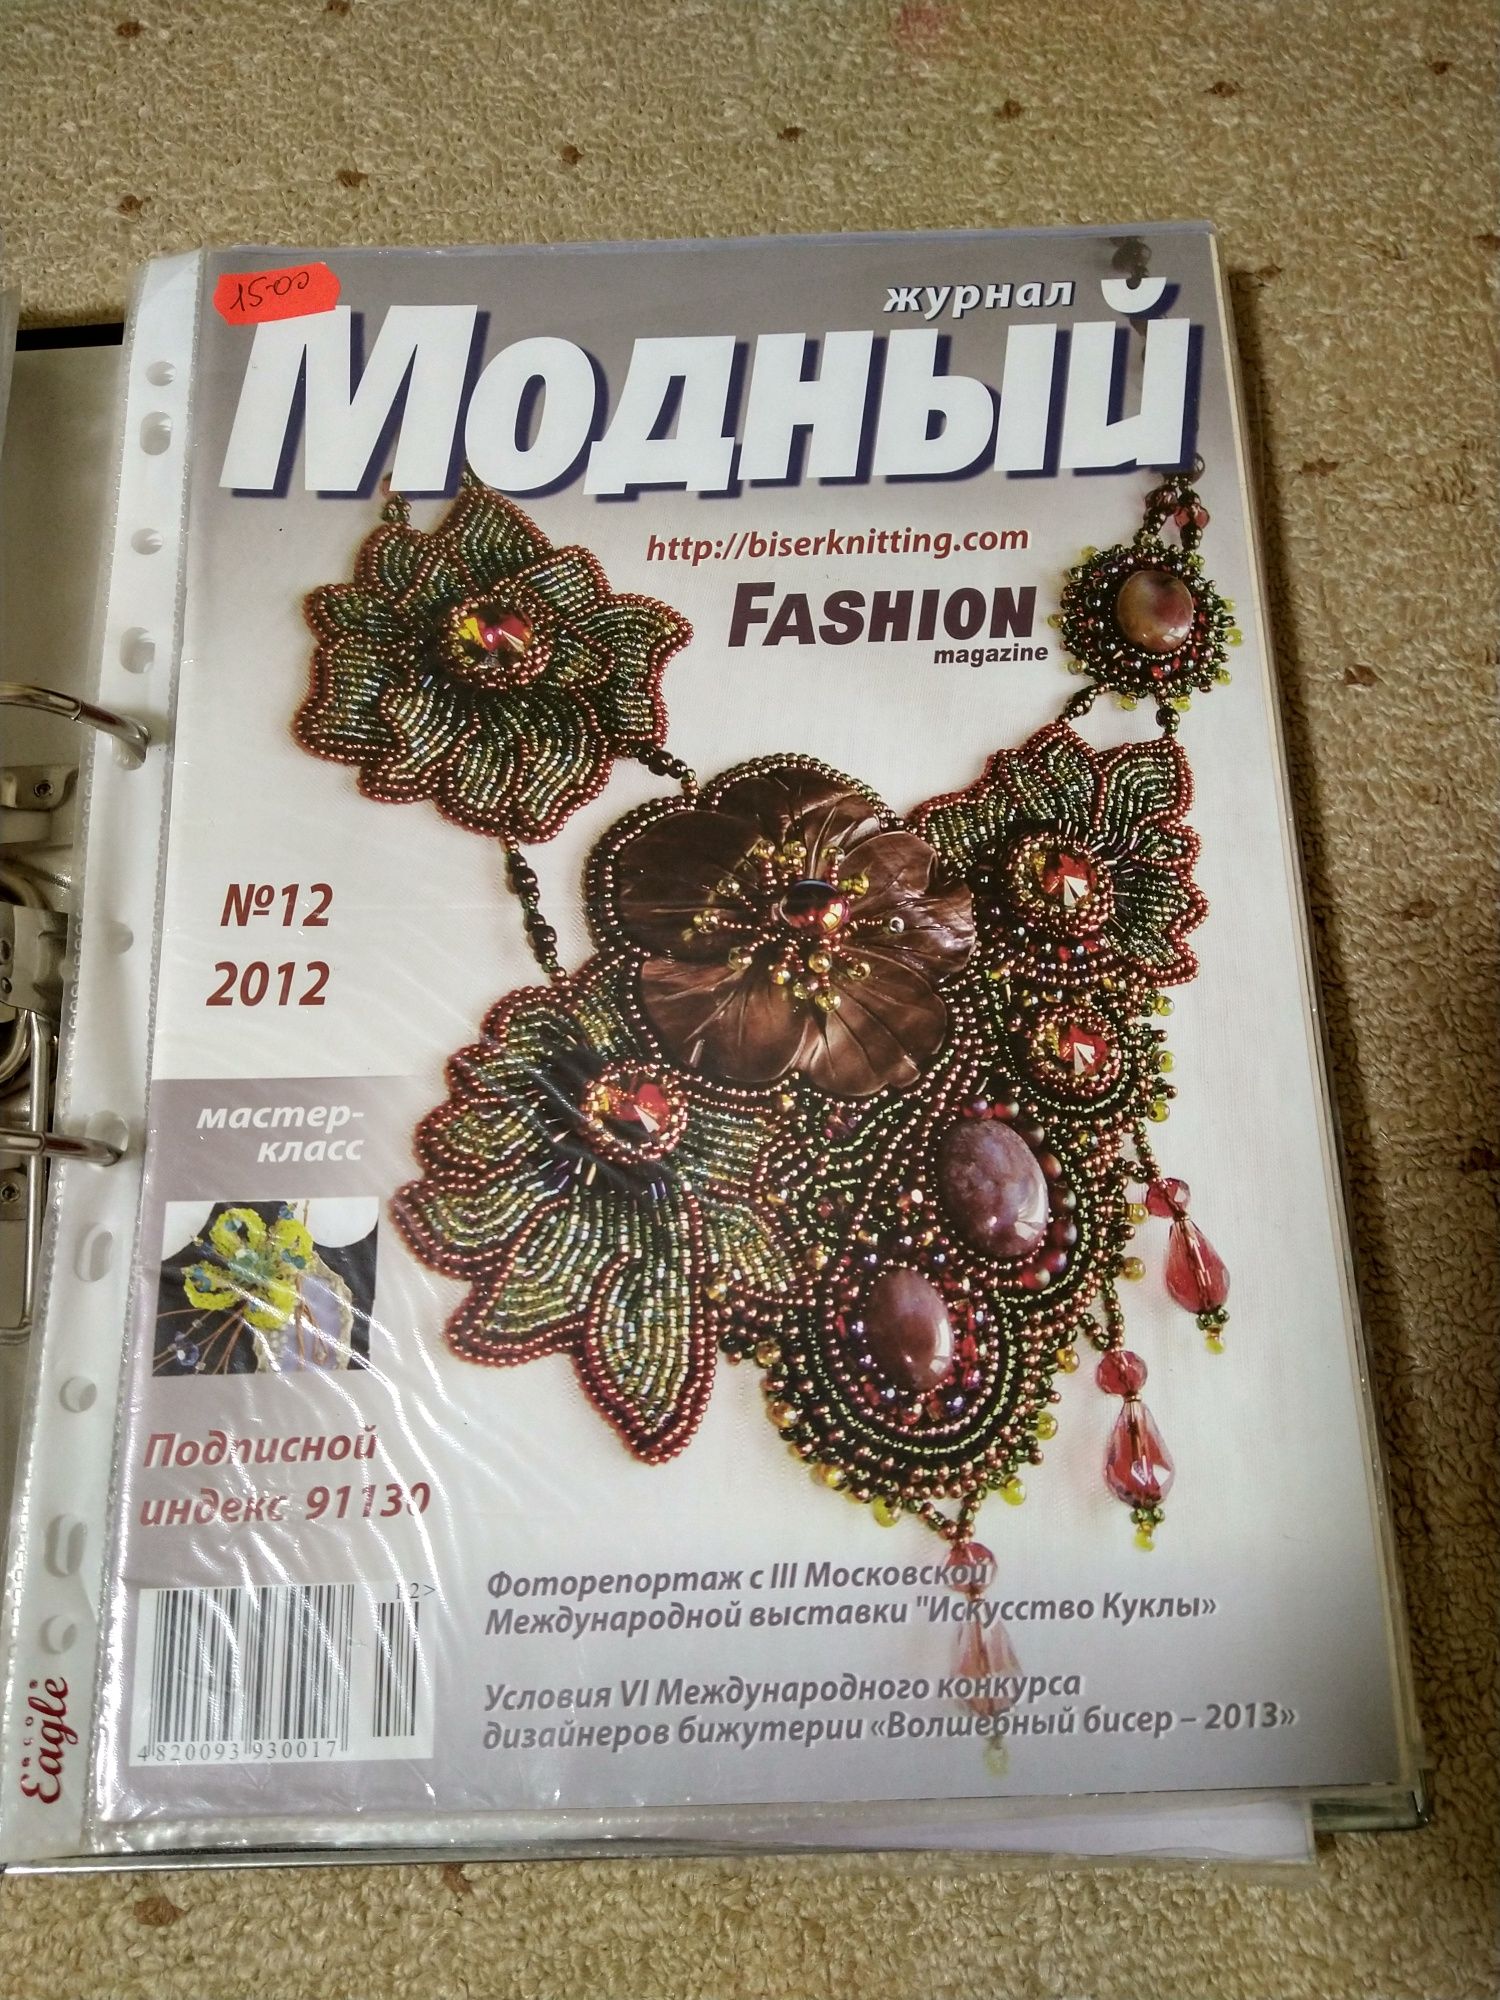 Журнал  - Модный Журнал, Модний Fashion, Бісер, наявність 2009-2015р